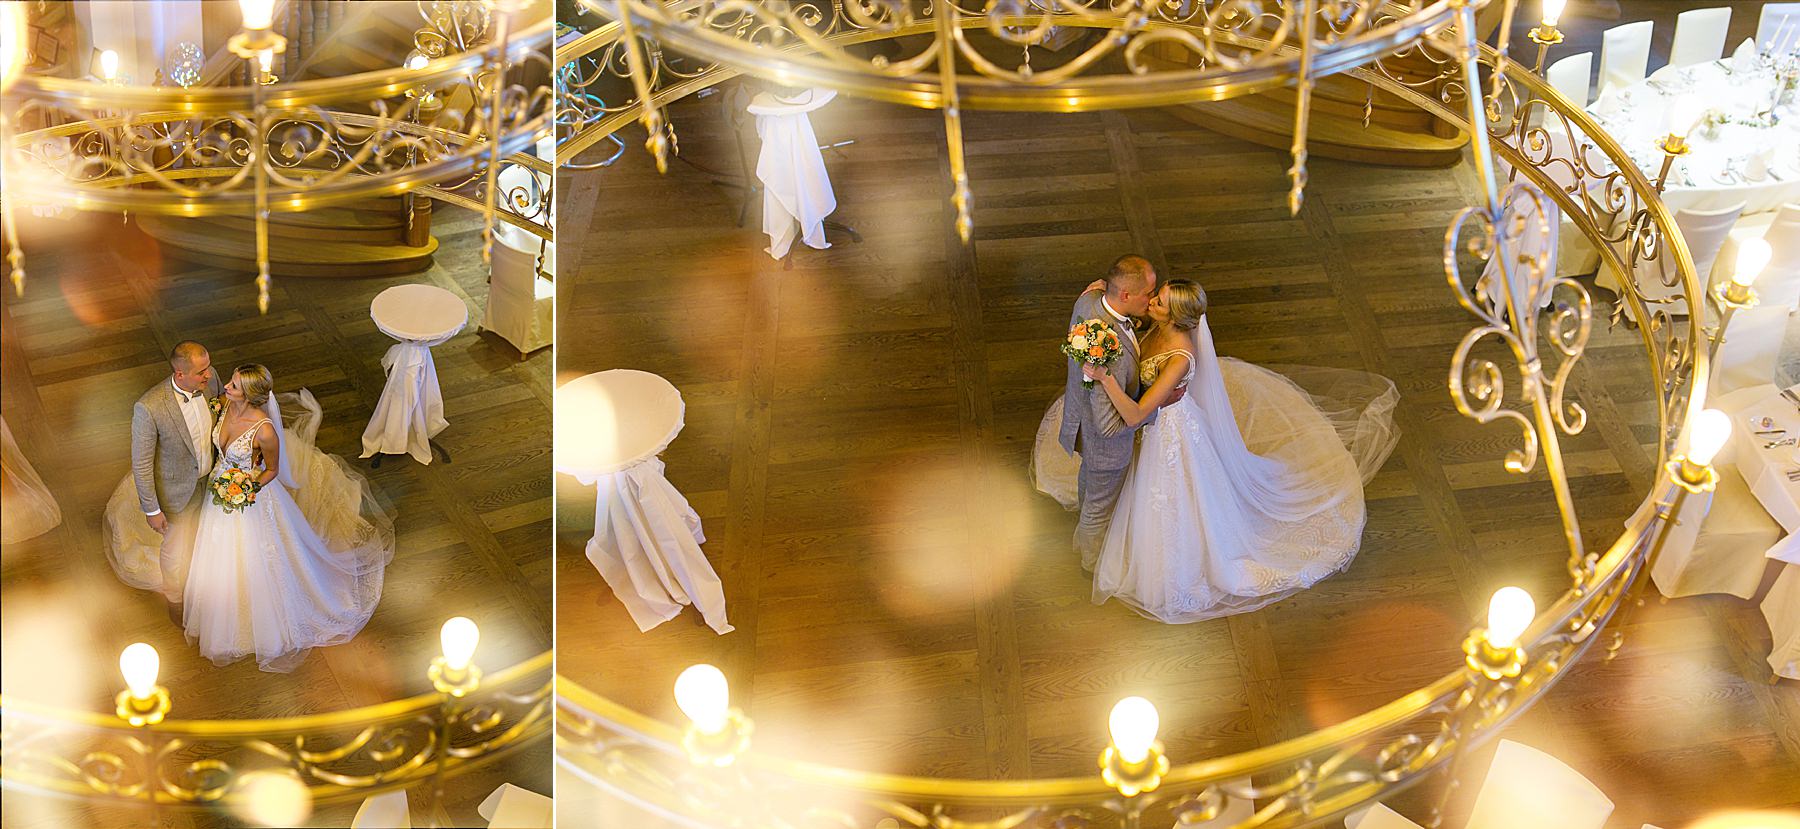 Heiraten im Landhotel Rössle in Rechenberg Hochzeitsfotos von Daniela Knipper Crailsheim